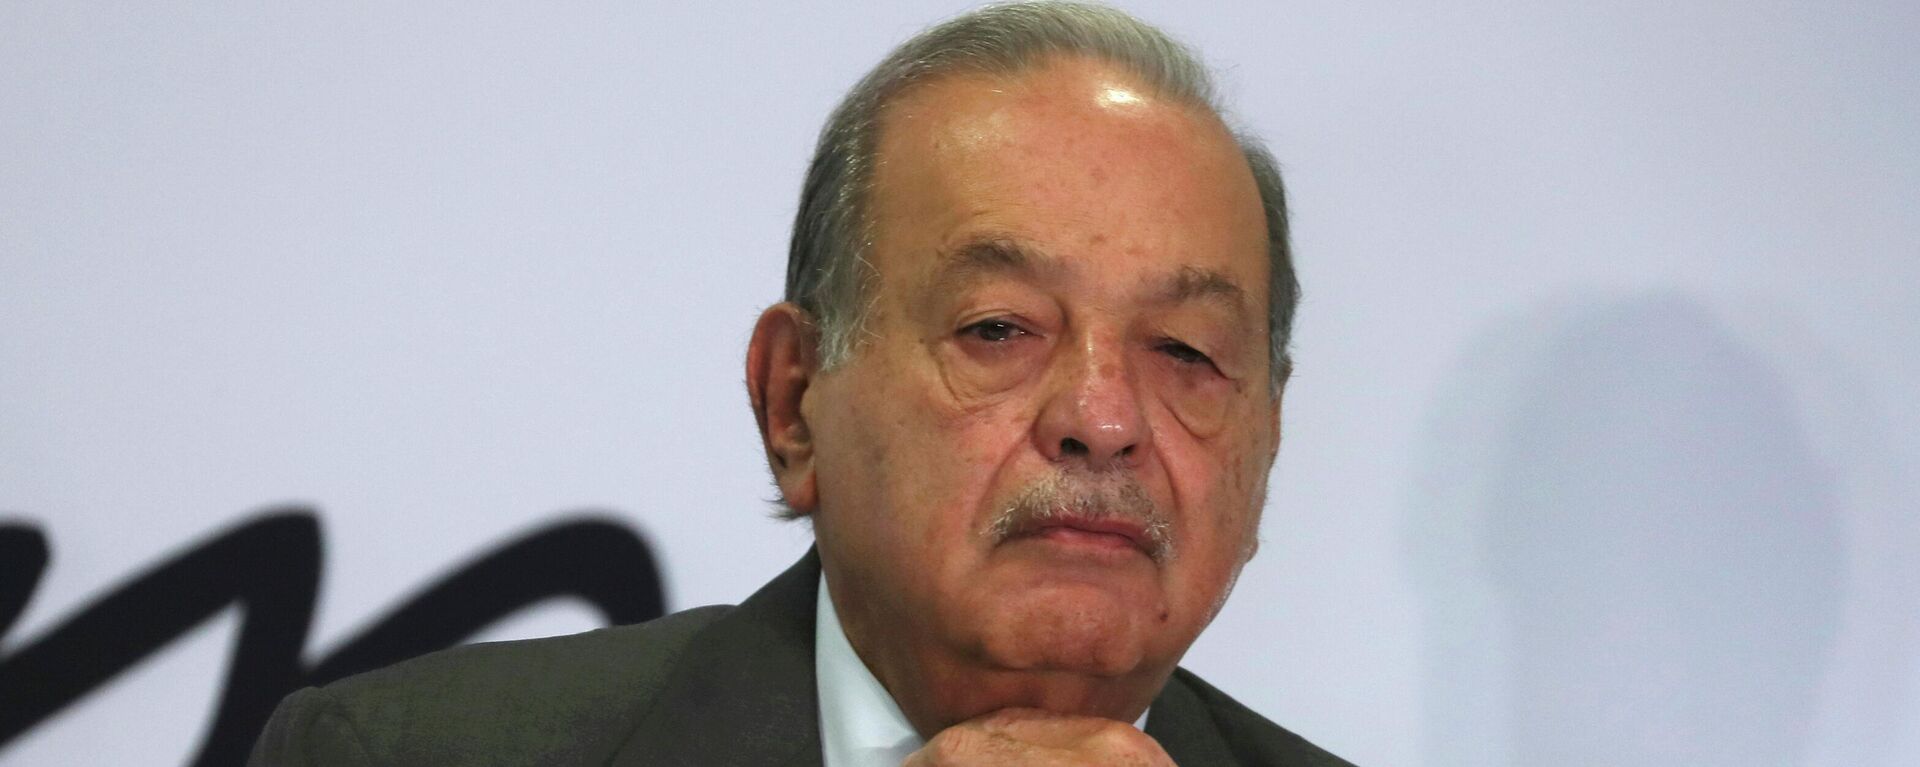 Carlos Slim, el magnate mexicano - Sputnik Mundo, 1920, 13.04.2022